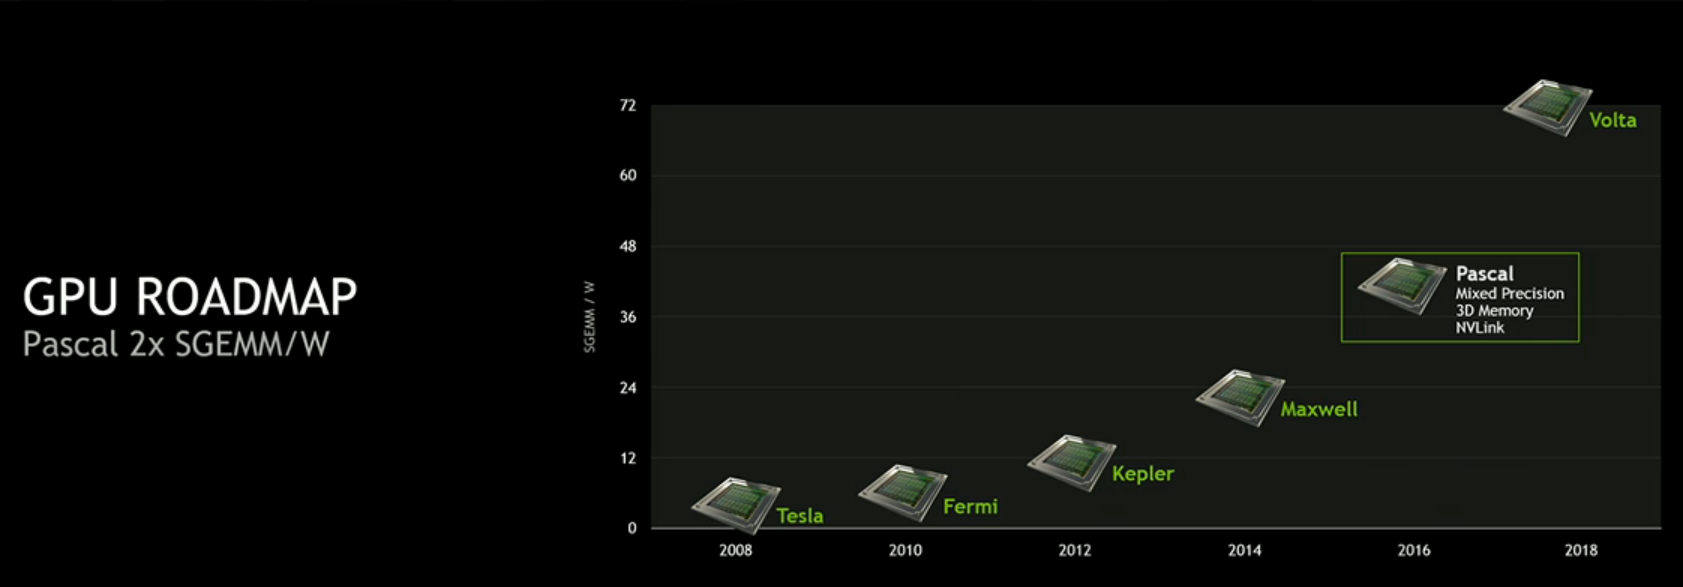 nVidia показала платформу для беспилотных автомобилей и самый мощный GPU в мире - 8